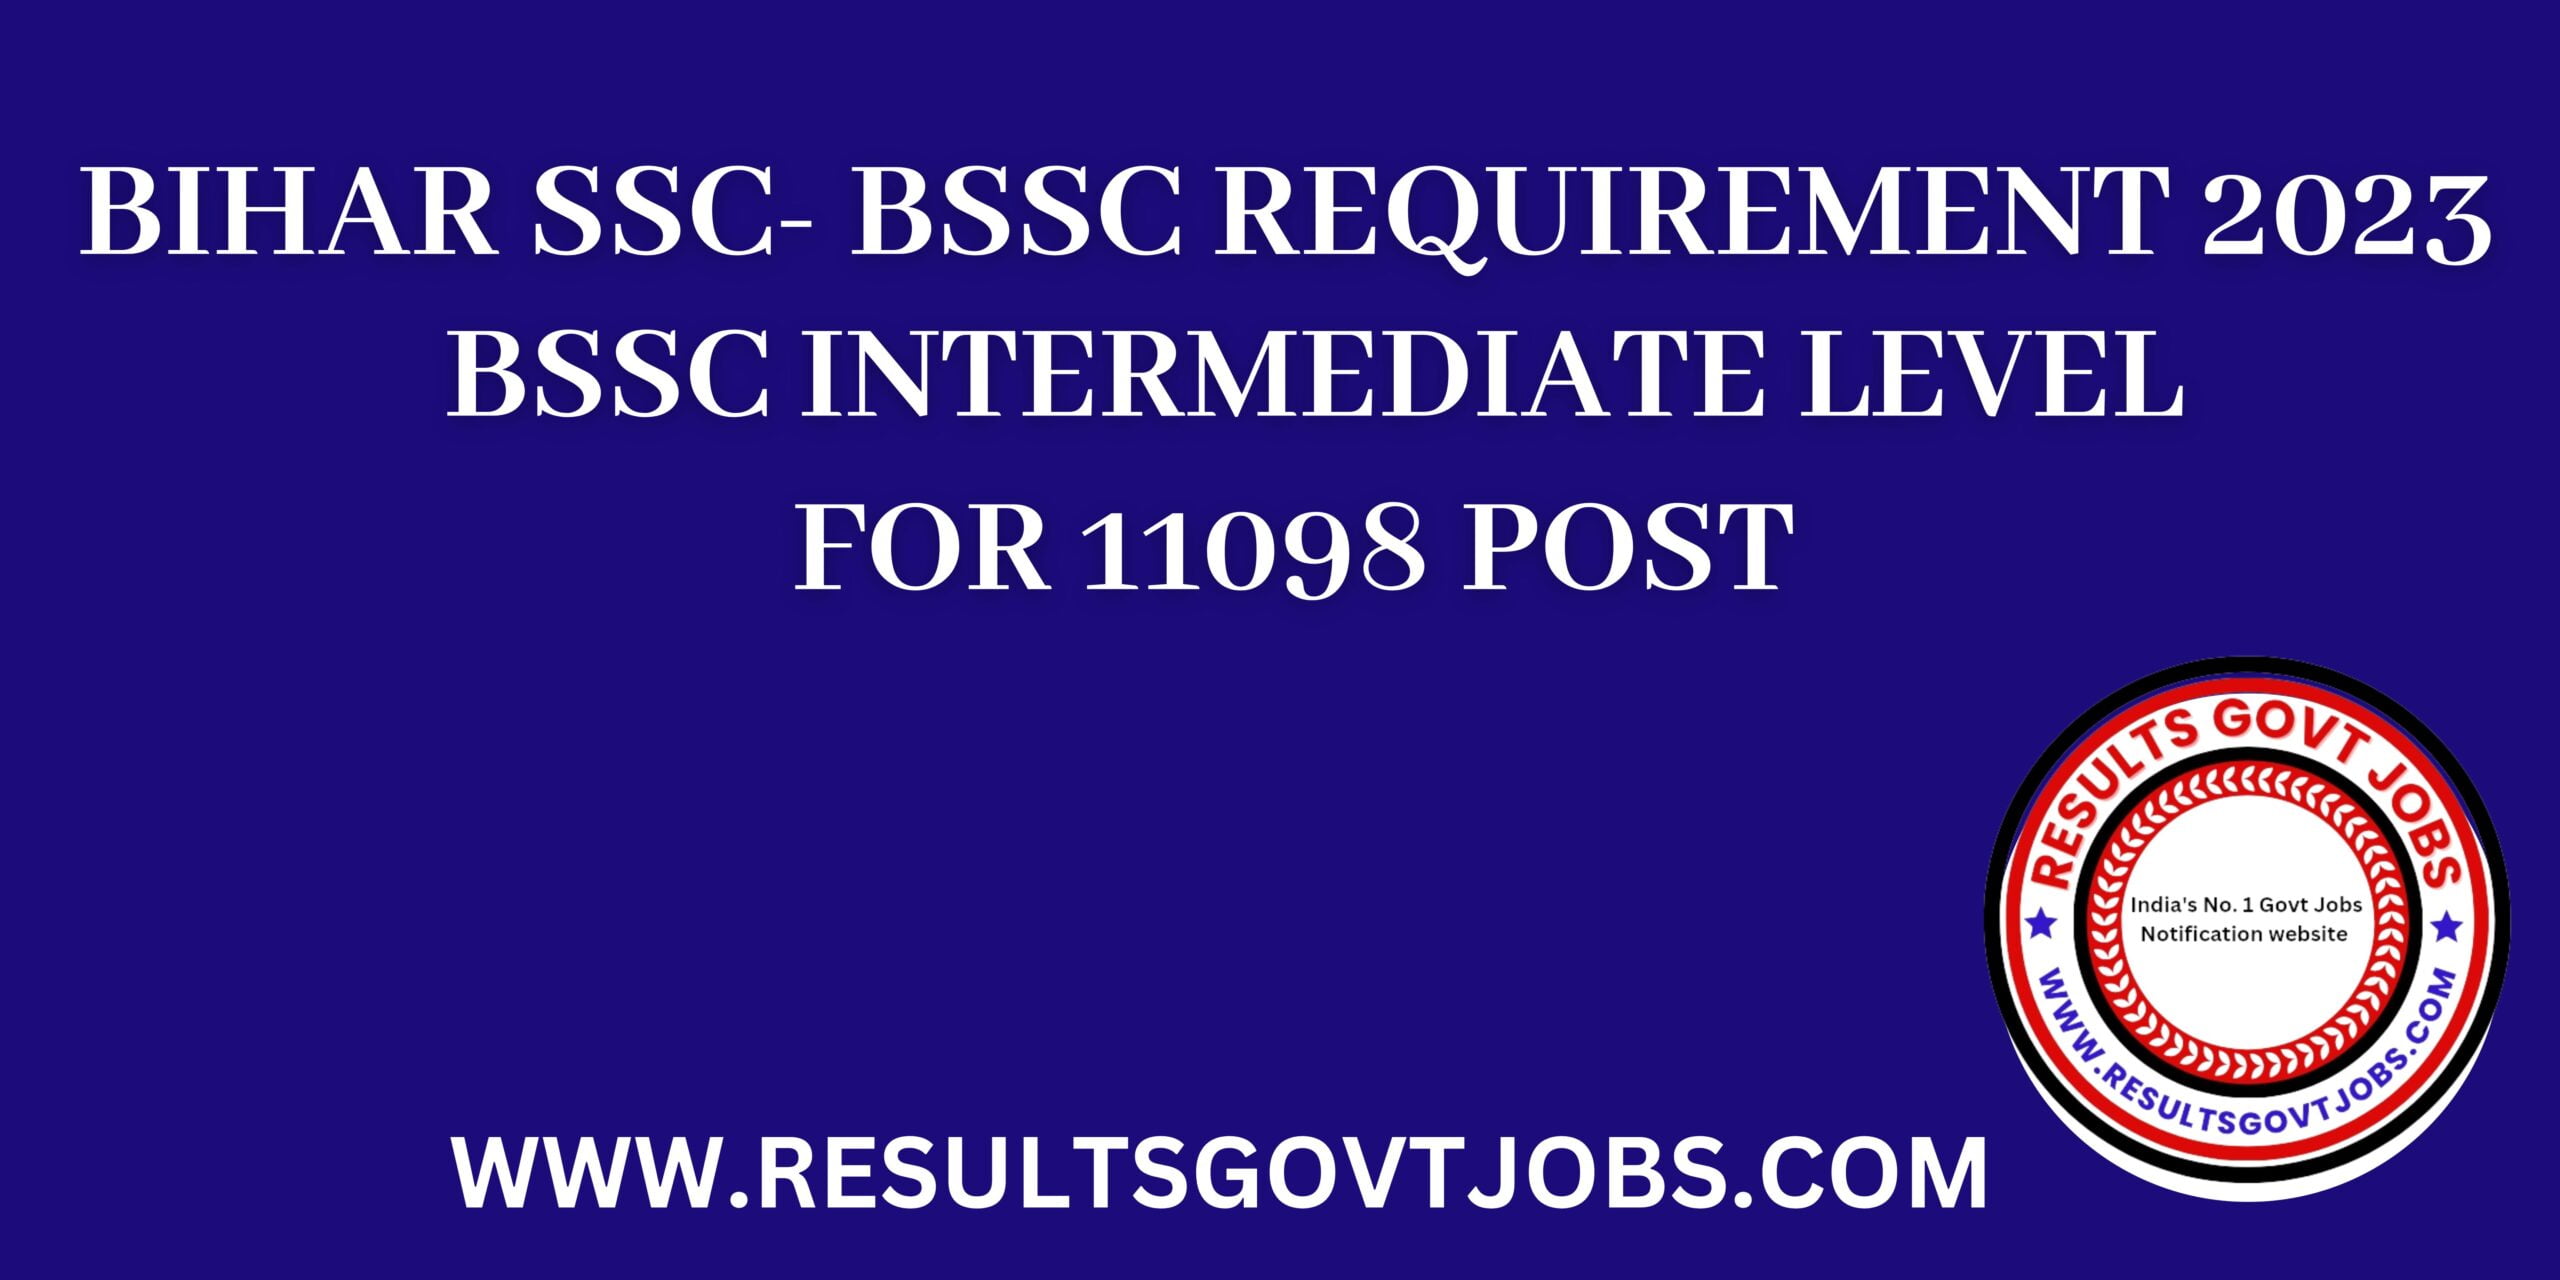 BSSC Bihar SSC Recruitment 2023 for 11098 post apply Online